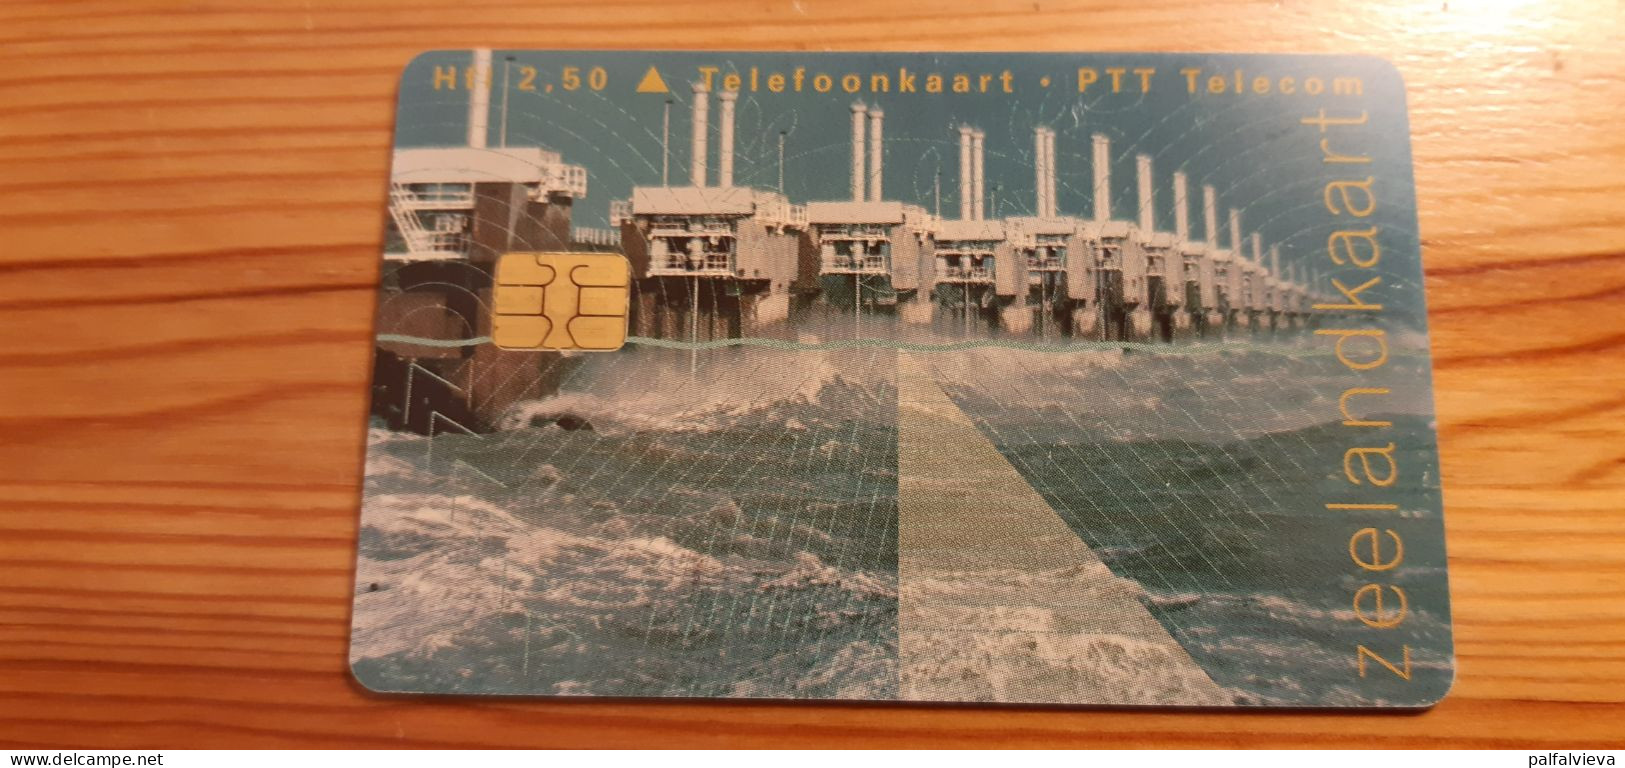 Phonecard Netherlands - Zeelandkaart - öffentlich